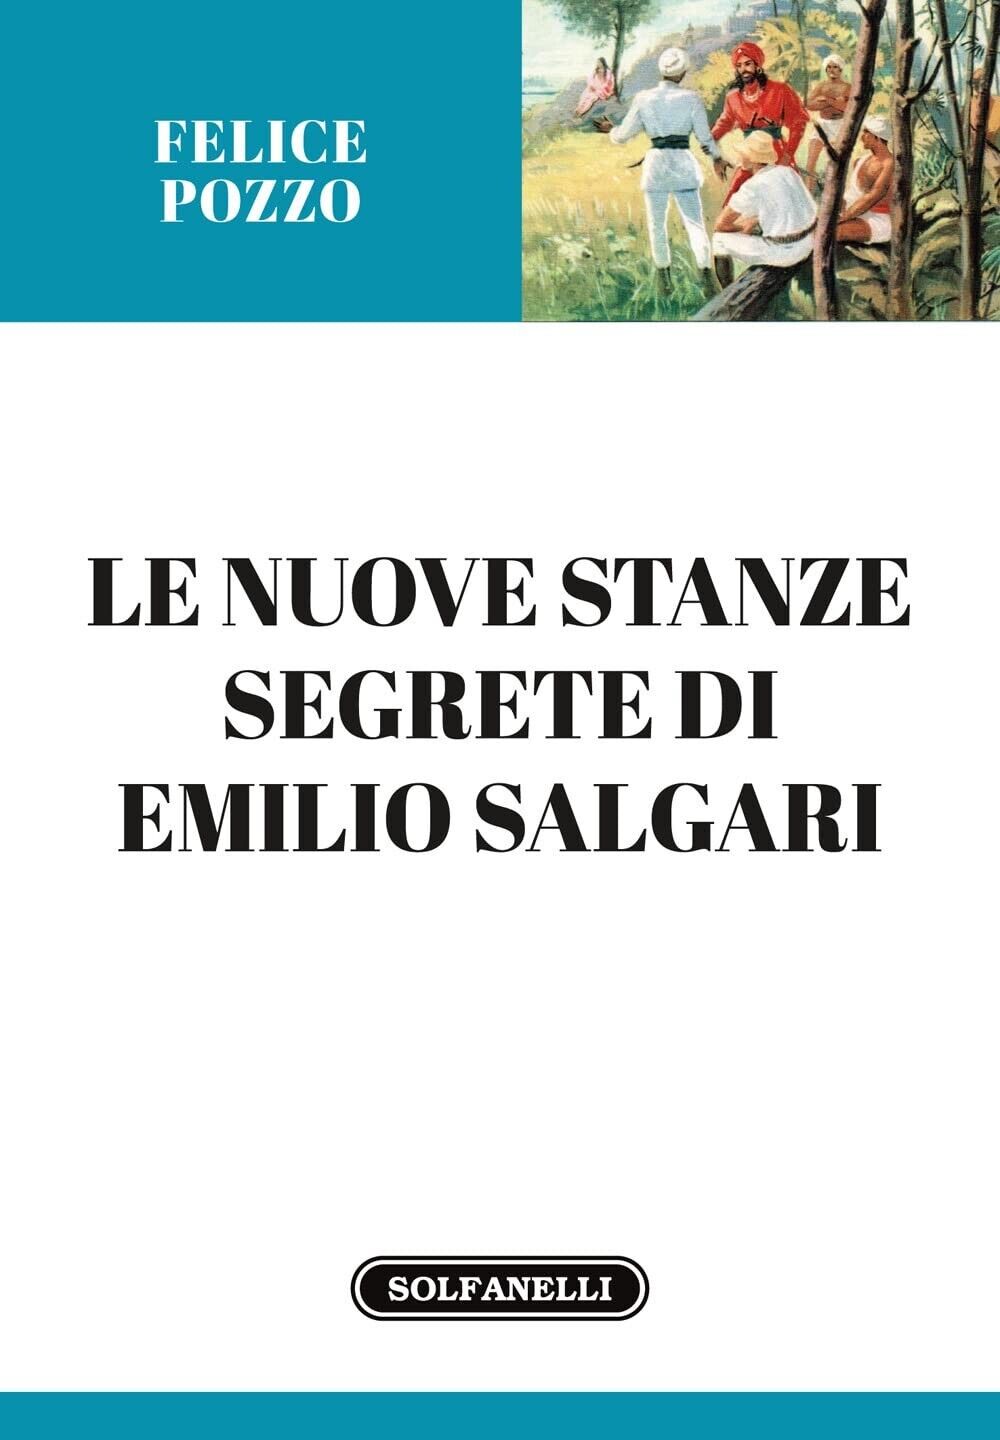  Le nuove stanze segrete di Emilio Salgari di Felice Pozzo, 2022, Solfanelli libro usato